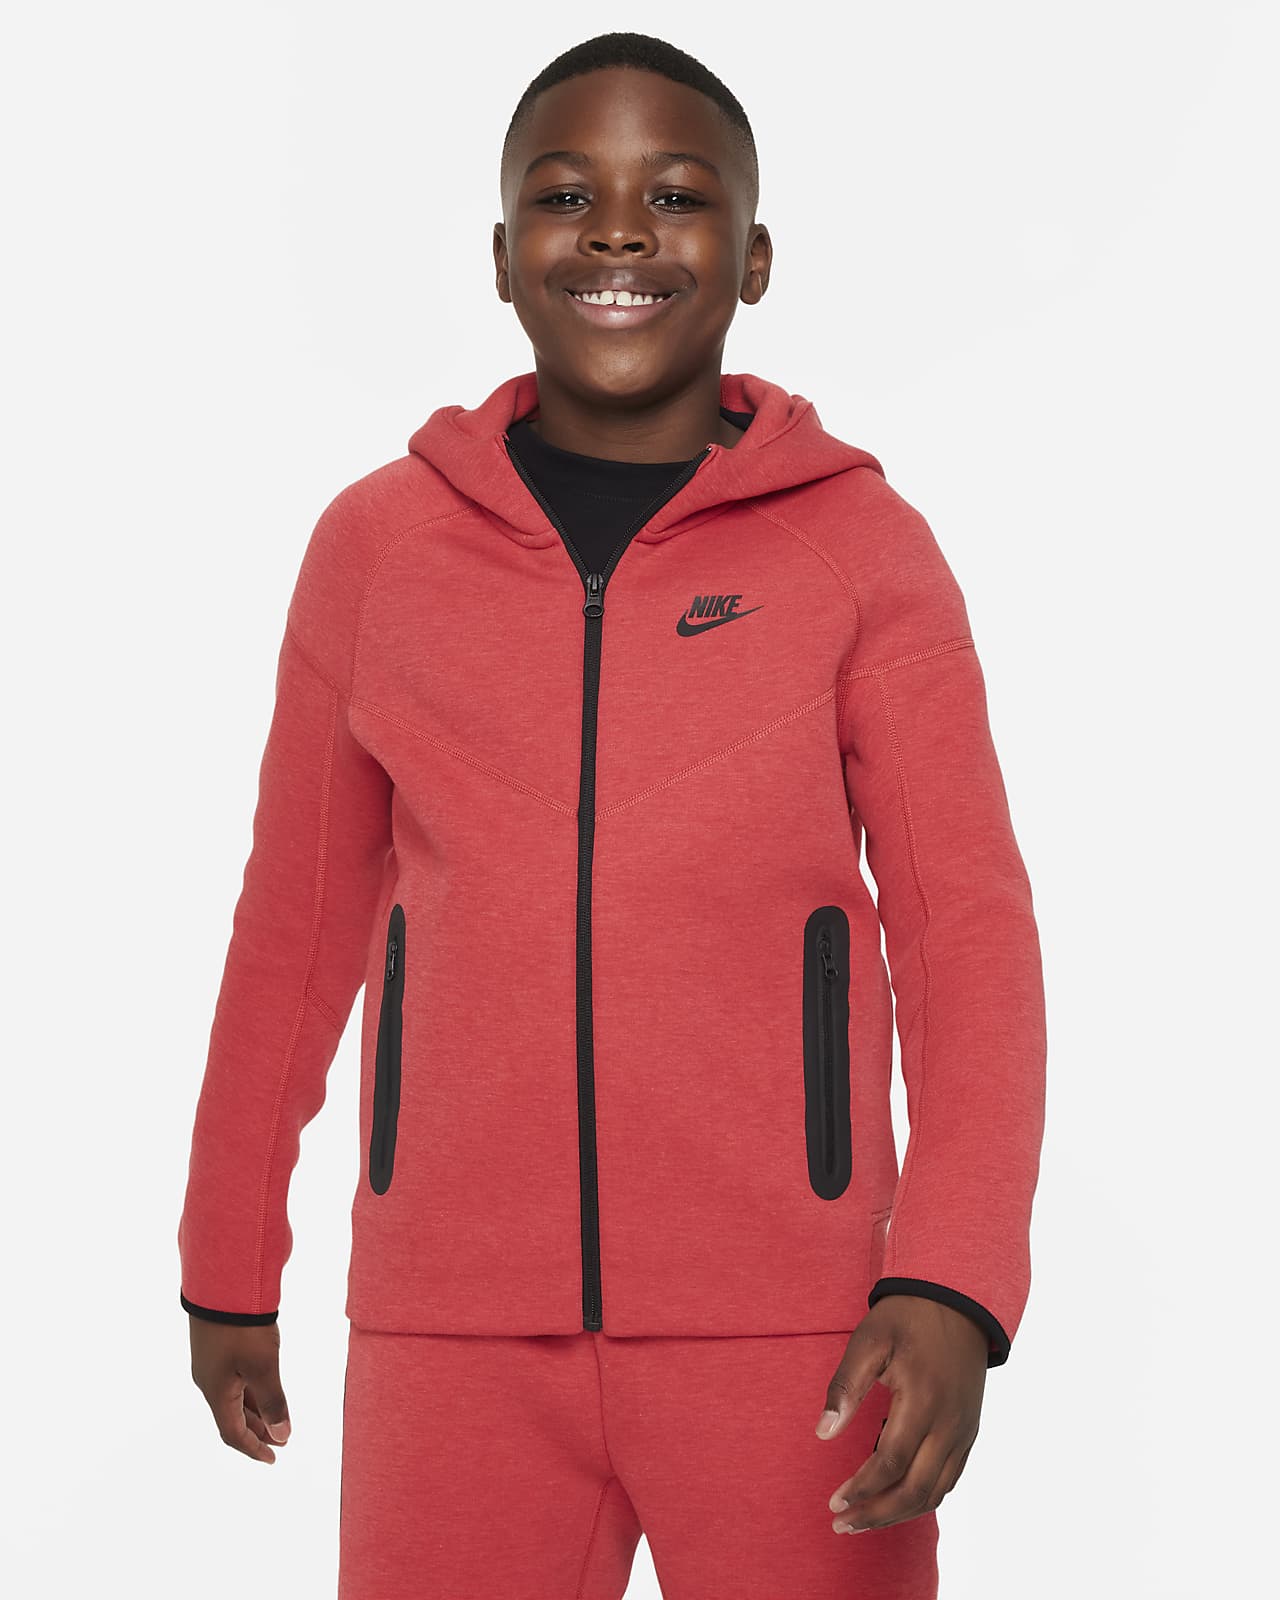 Flísová mikina Nike Sportswear Tech Fleece pro větší děti (chlapce) s dlouhým zipem a kapucí (větší velikost)